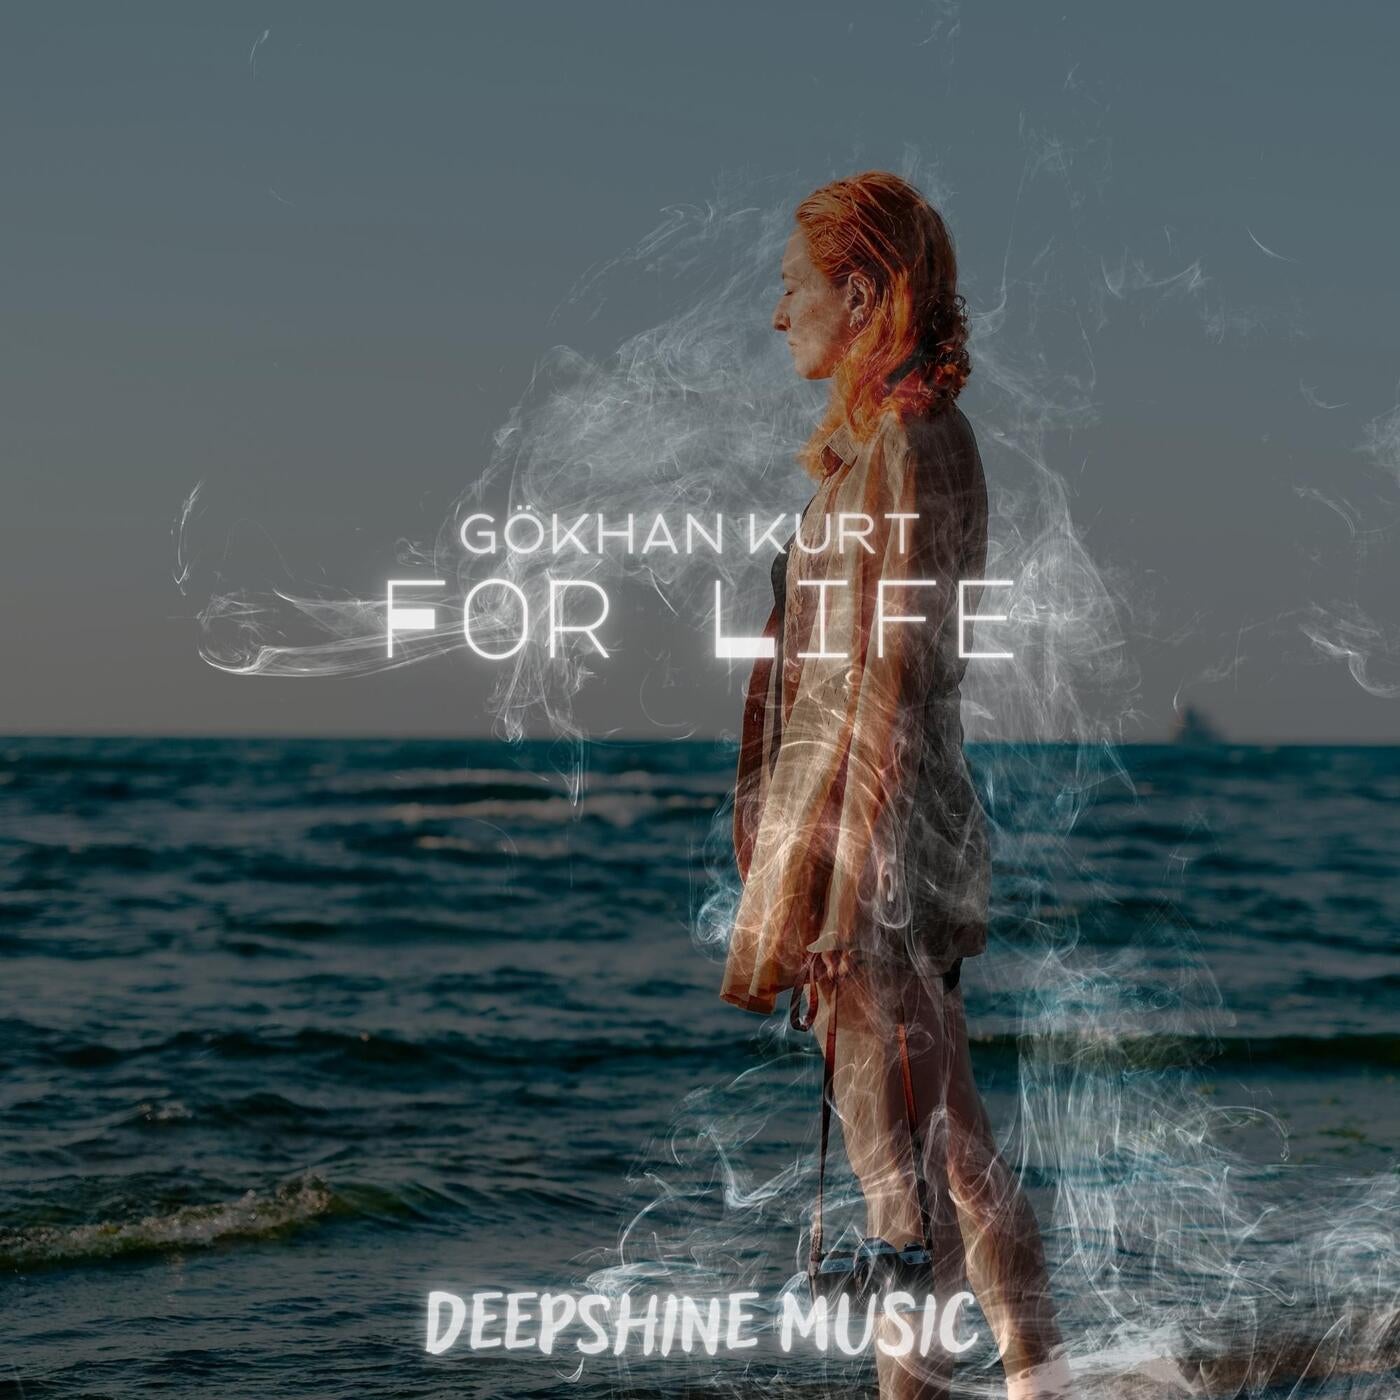 Gökhan Kurt - For Life [DeepShine Music]